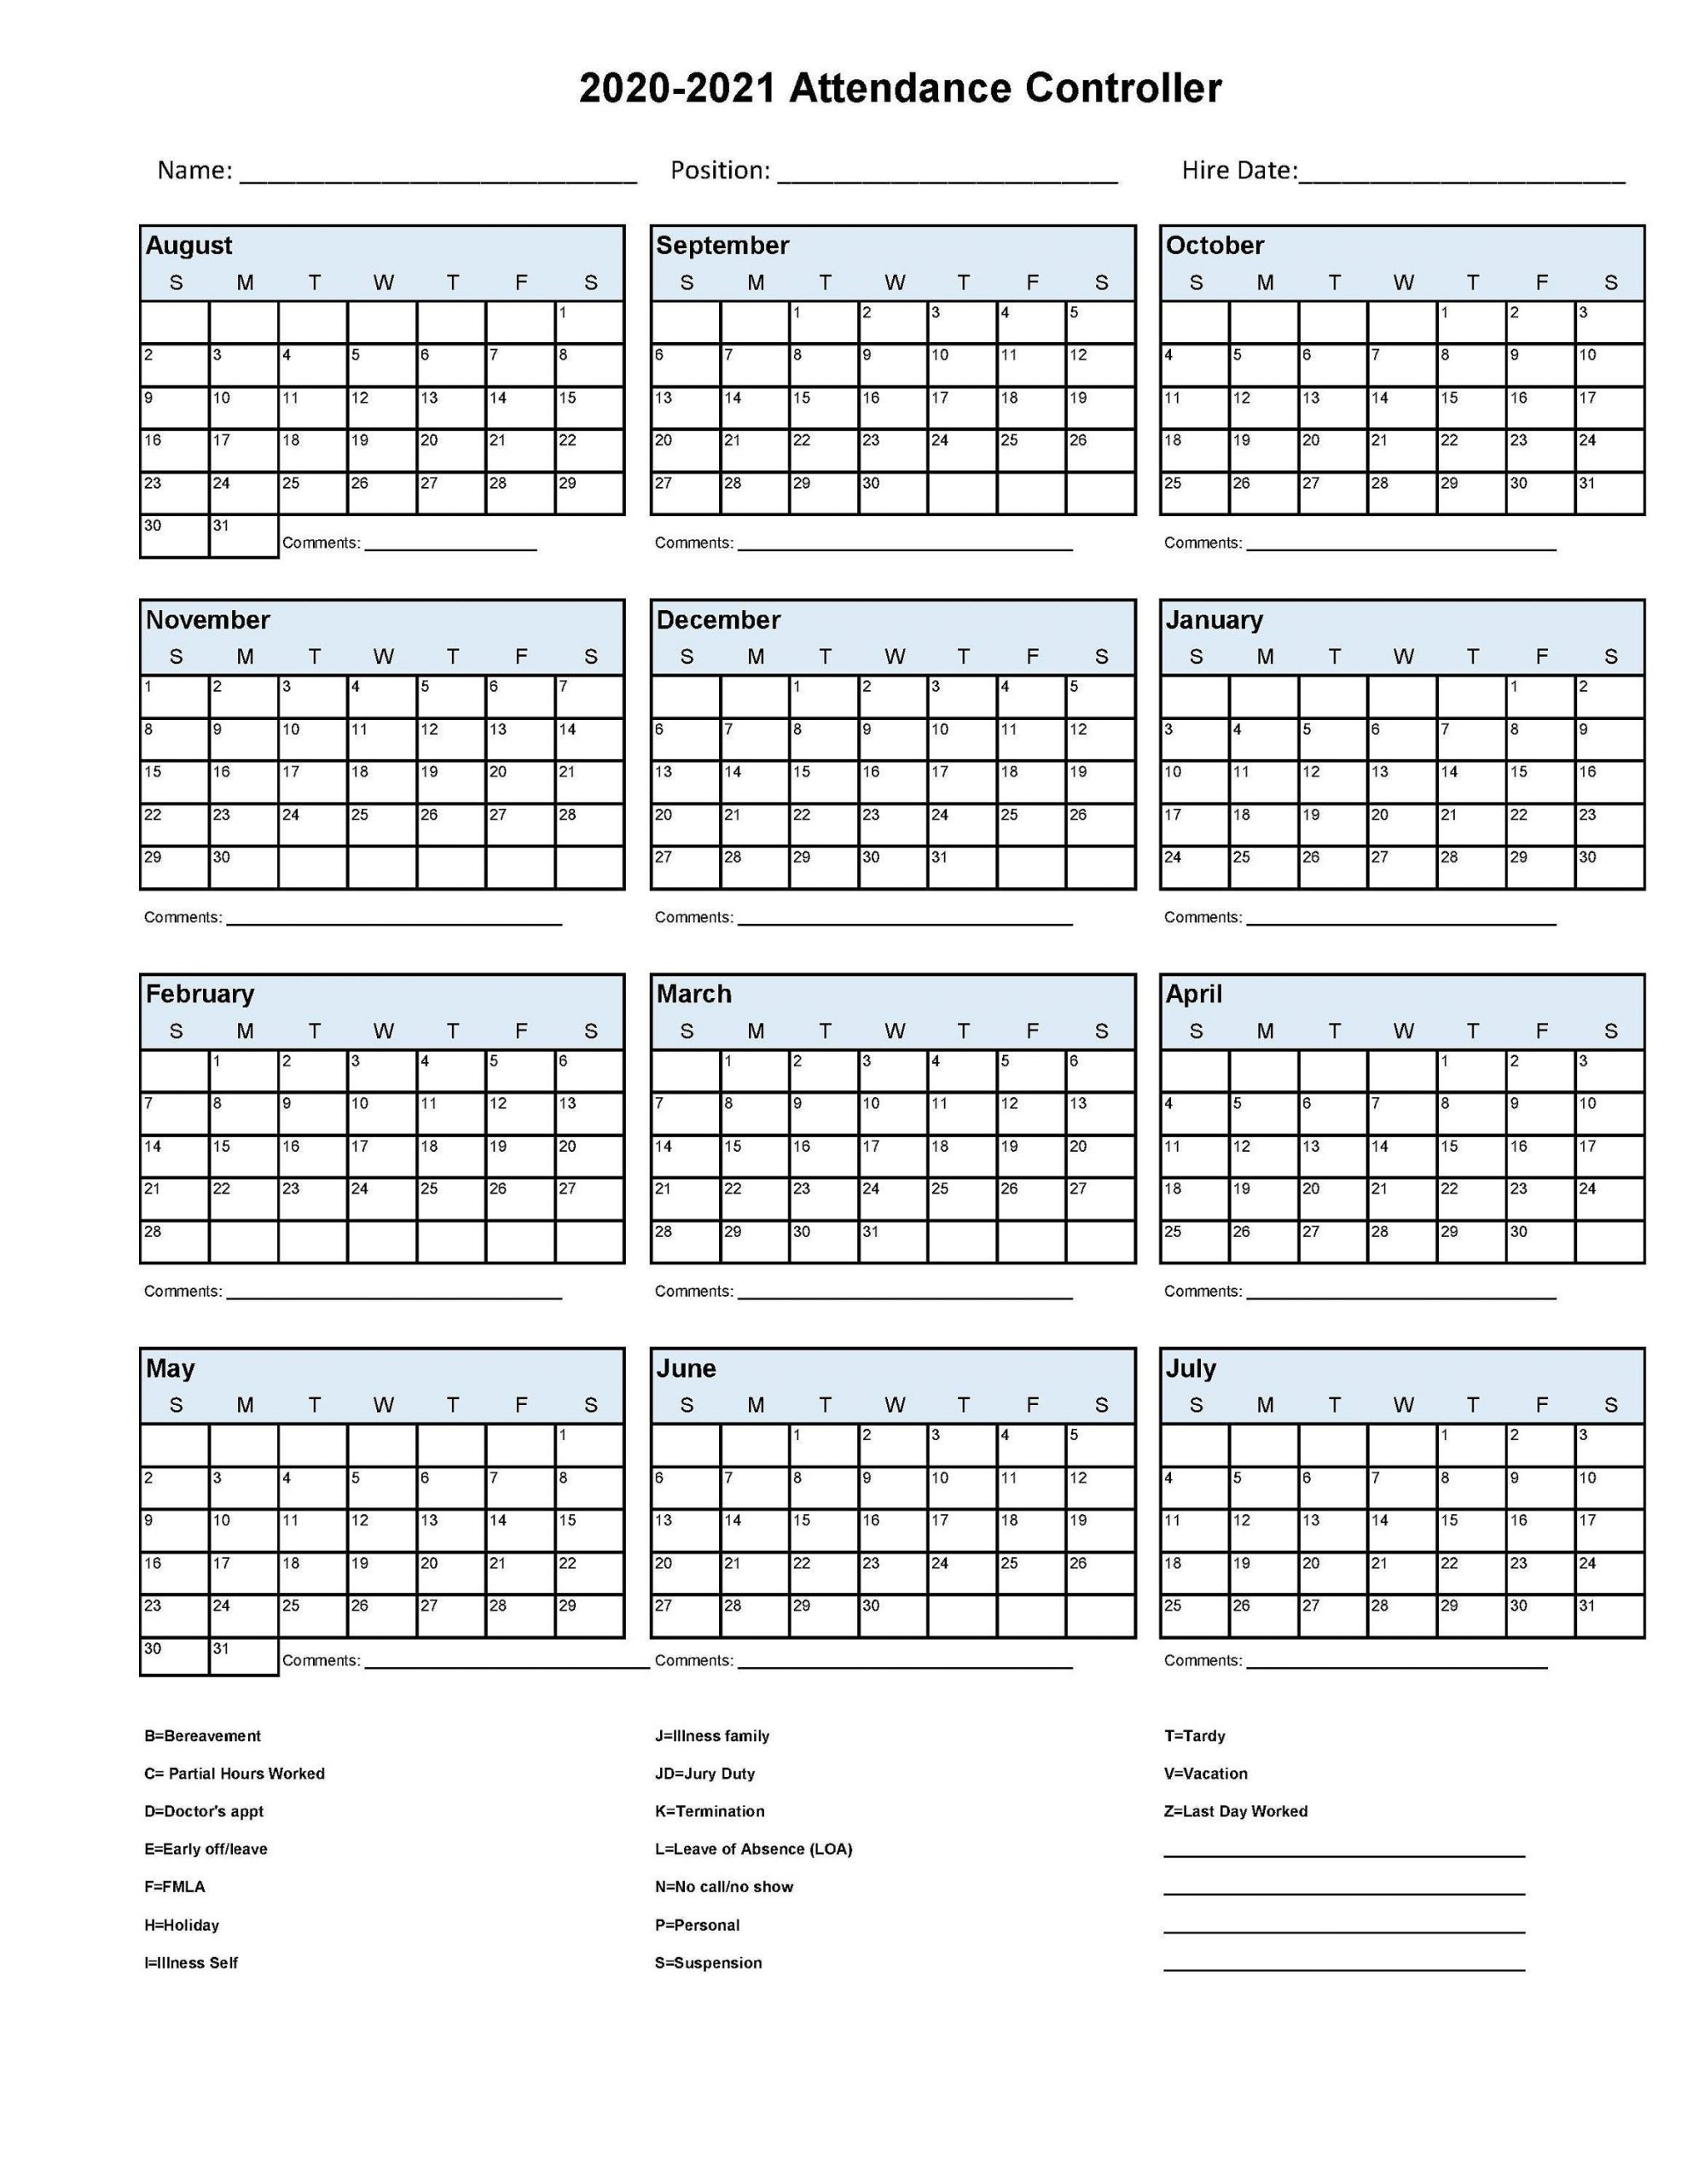 2020 2021 Employee School Attendance Tracker Calendar | Etsy-Employee Attendance Tracker 2021